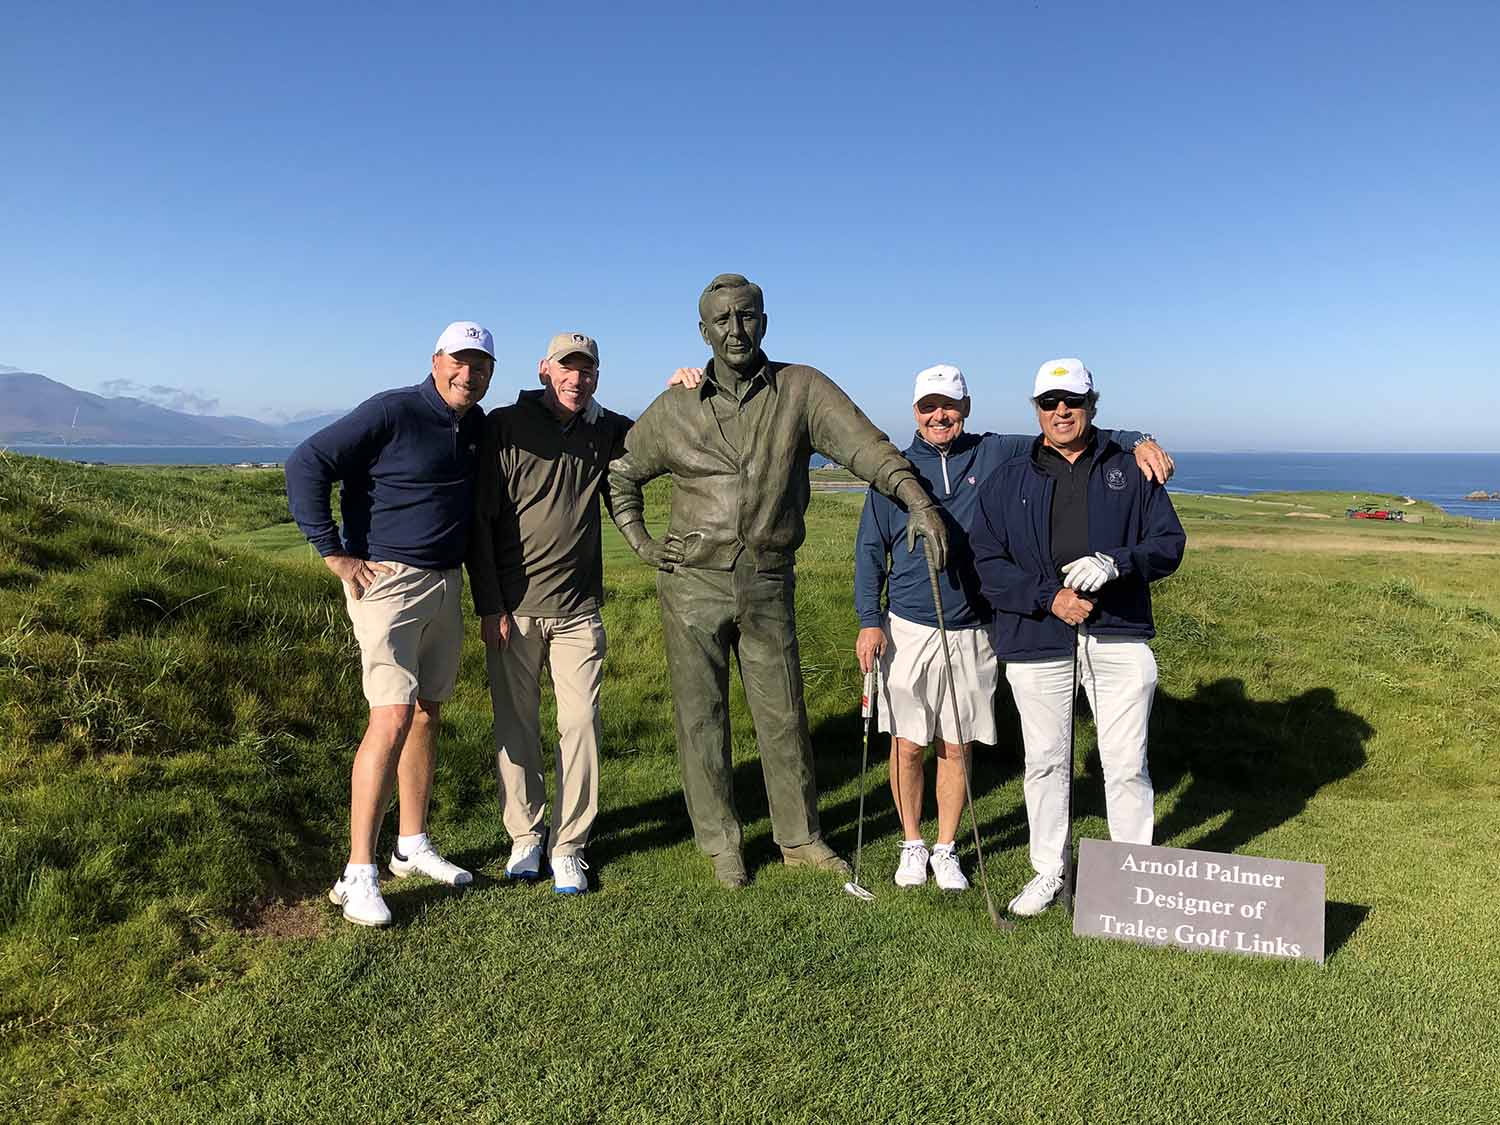 Tralee Golf Arnold Palmer Statue